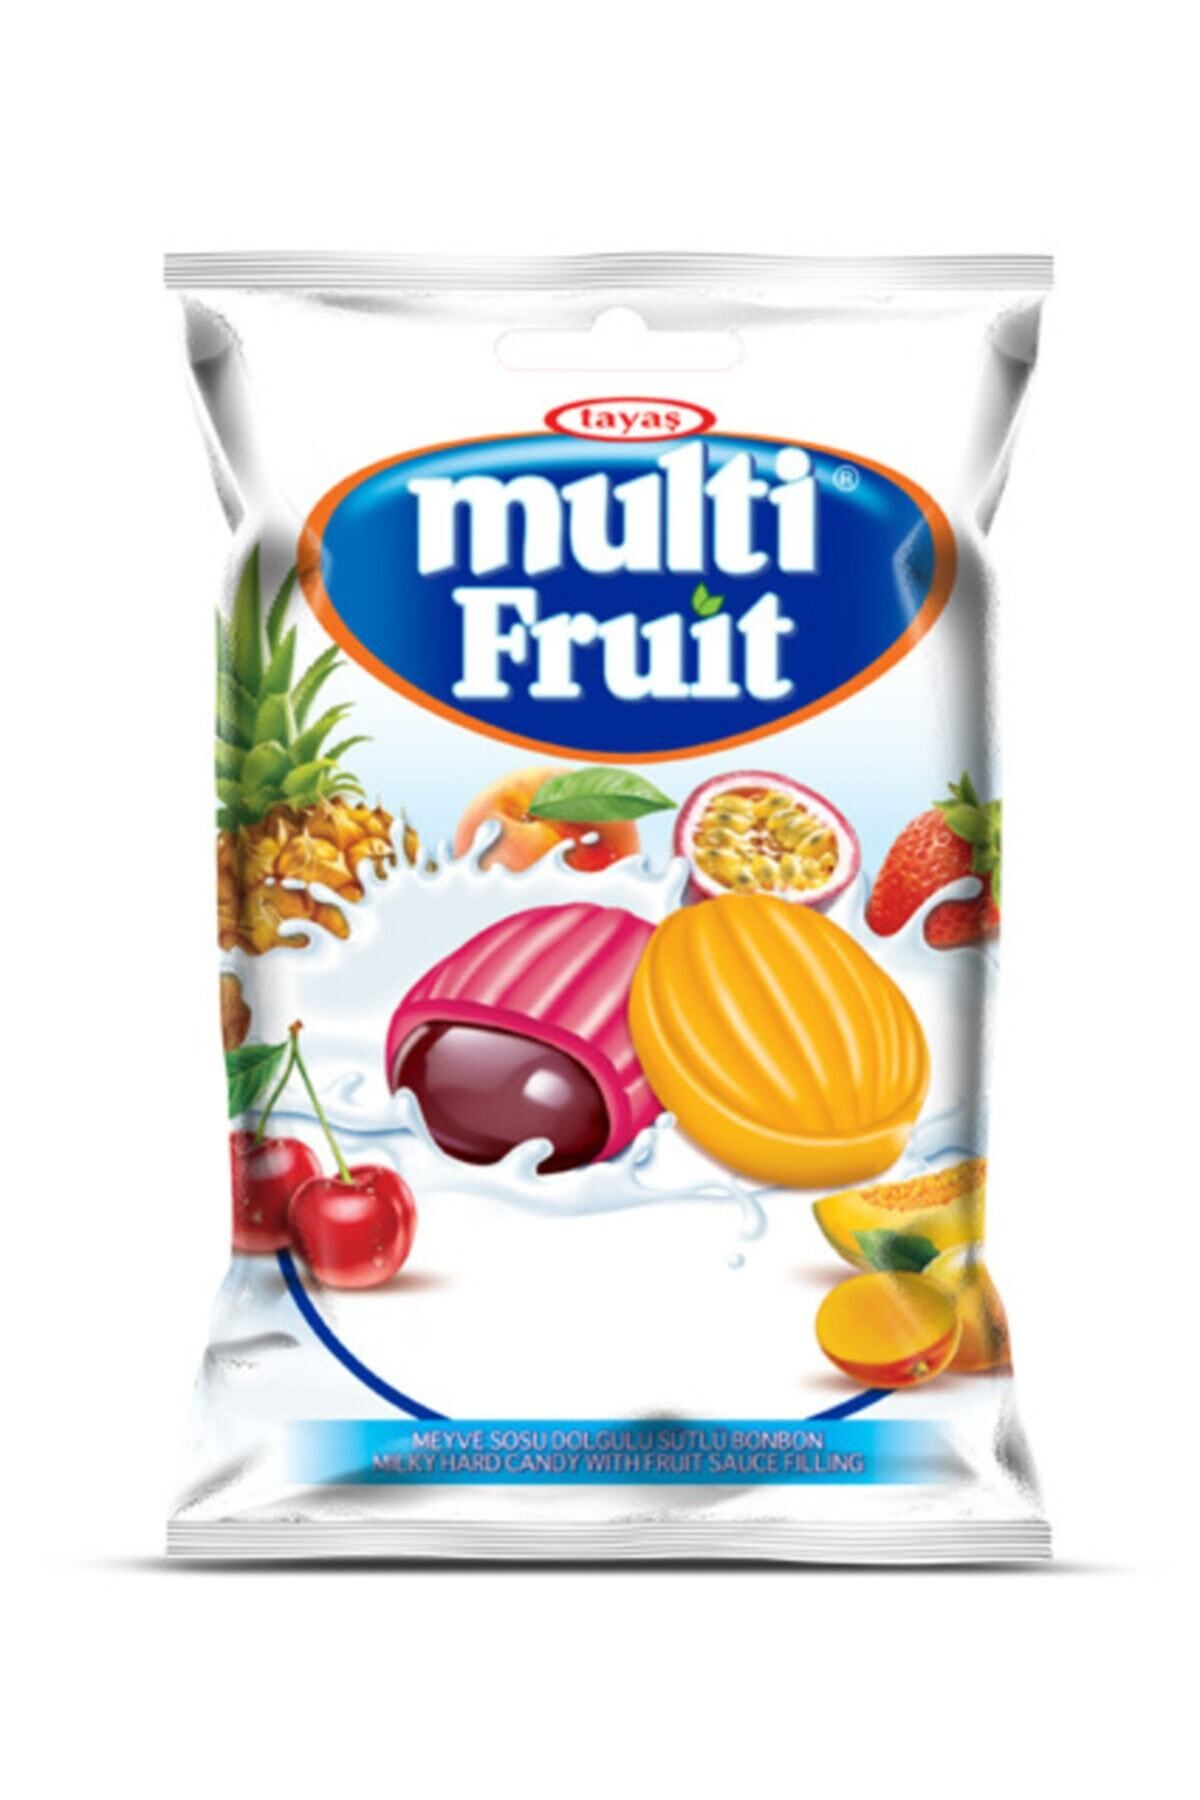 TAYAŞ Multi Fruit - Meyve Sosu Dolgulu Sütlü Bonbon 300 Gr.